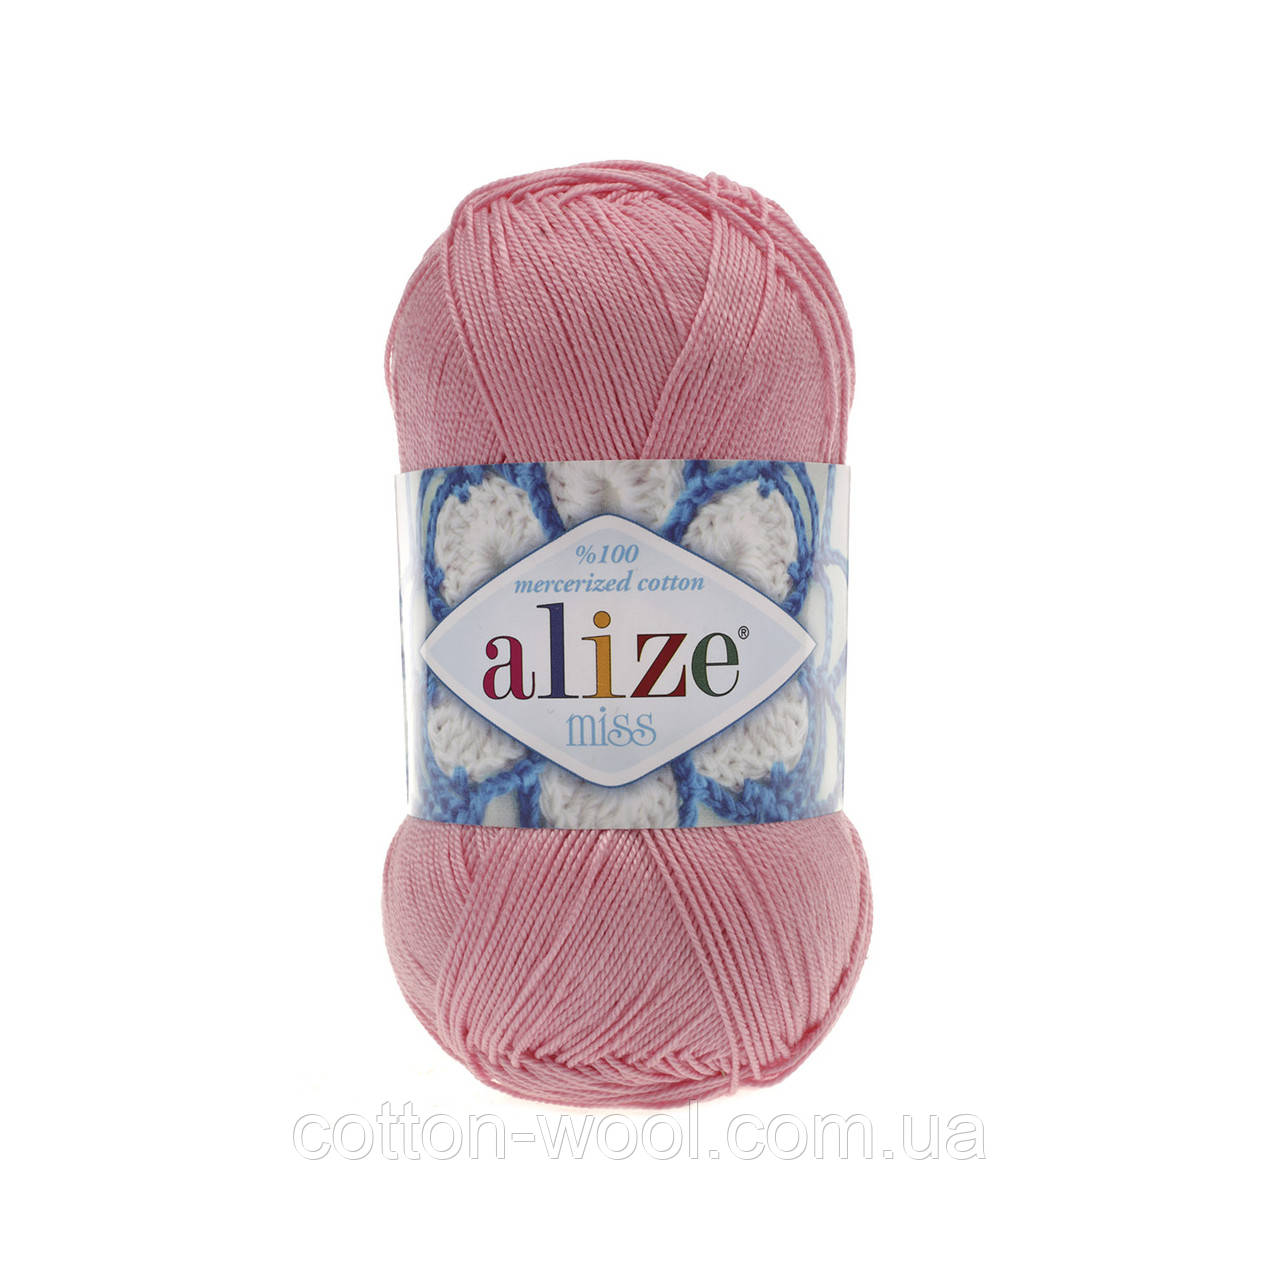  Alize Miss (Алізе Міс) 100% мерсеризована бавовна 170 рожева